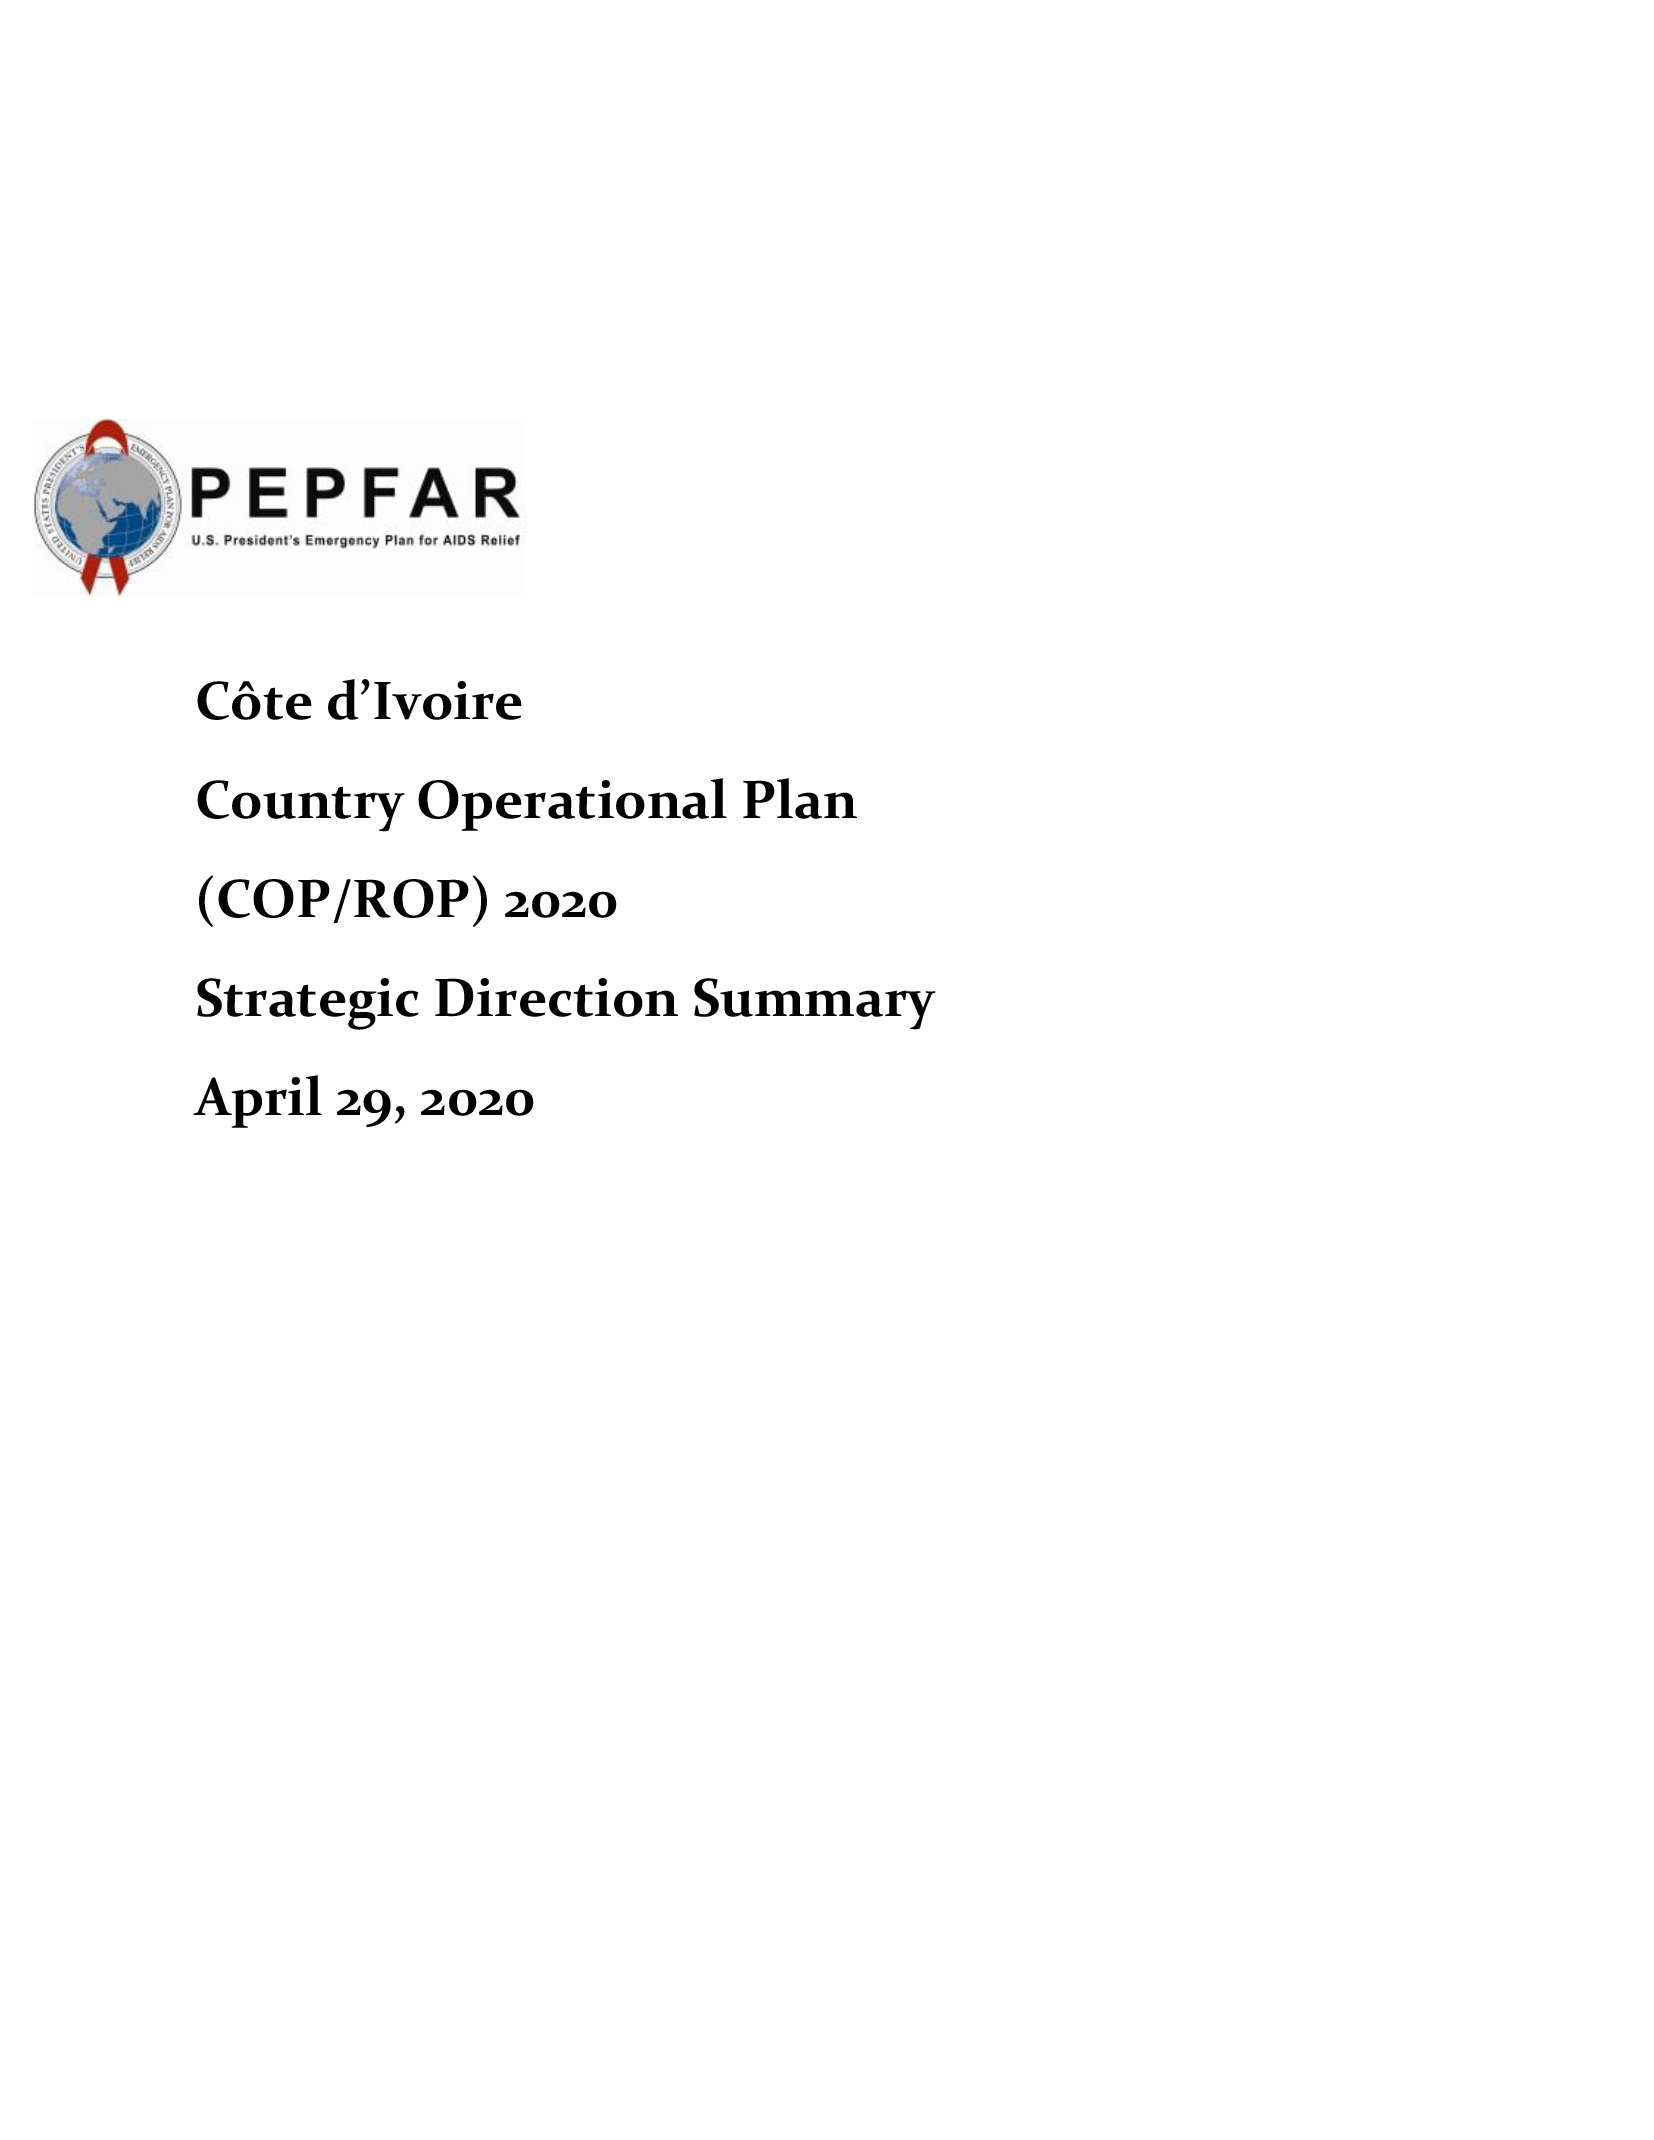 Résumé de l'orientation stratégique 2020 du plan opérationnel pays de la Côte d'Ivoire (COP/ROP) Couverture